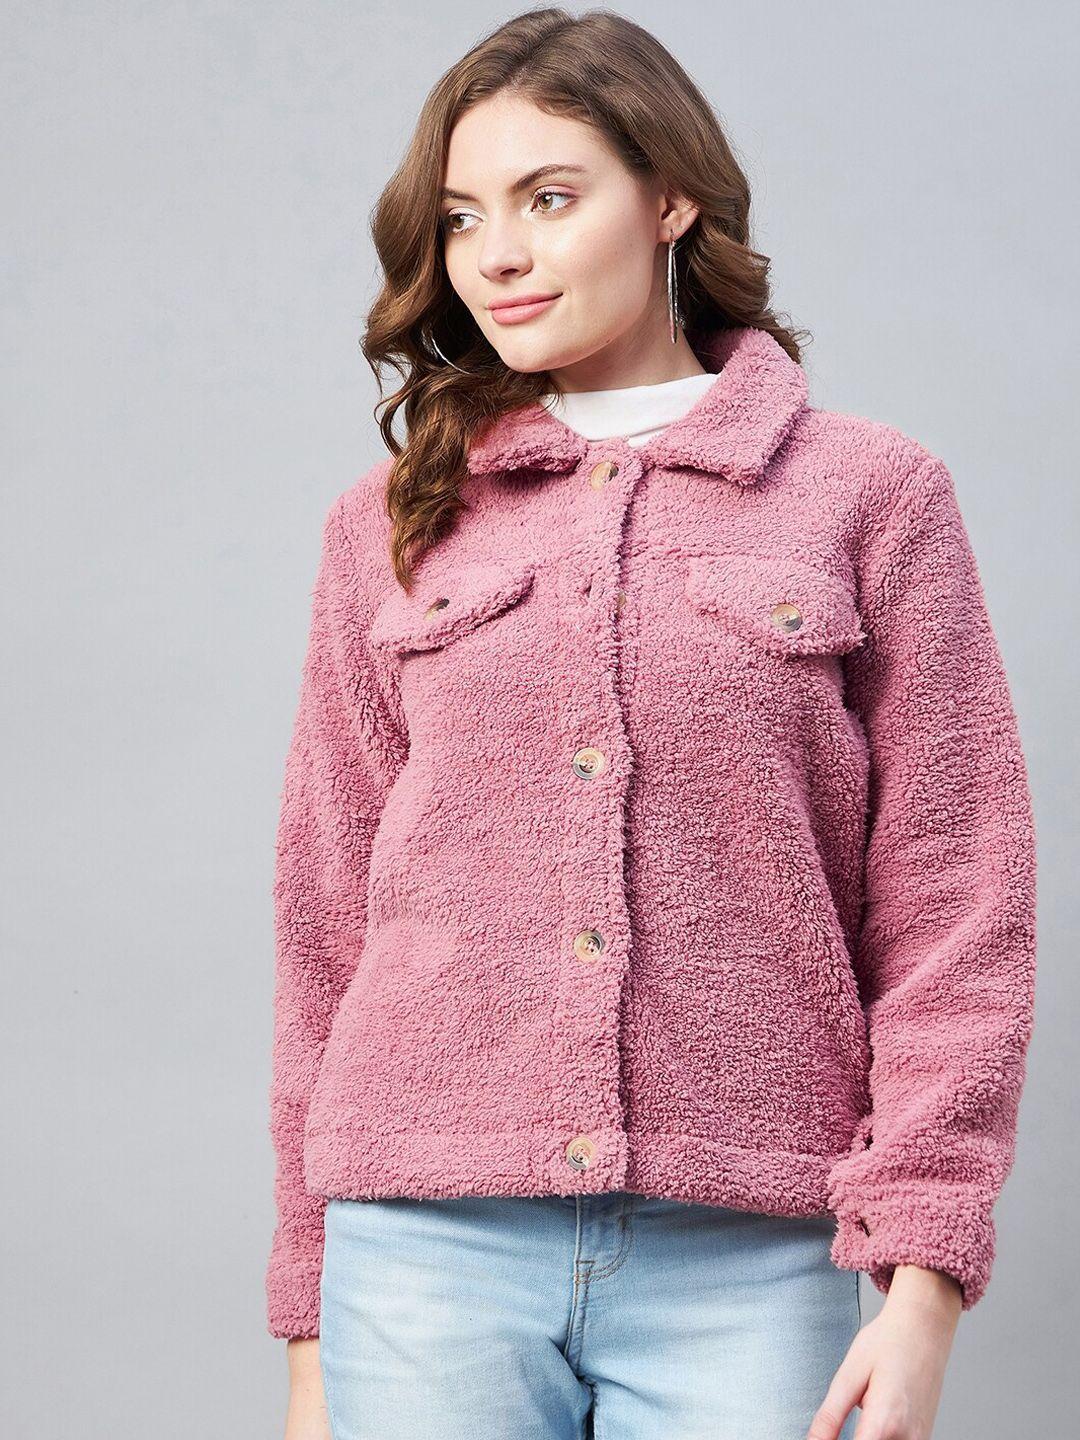 stylestone fleece winter tailored jacket